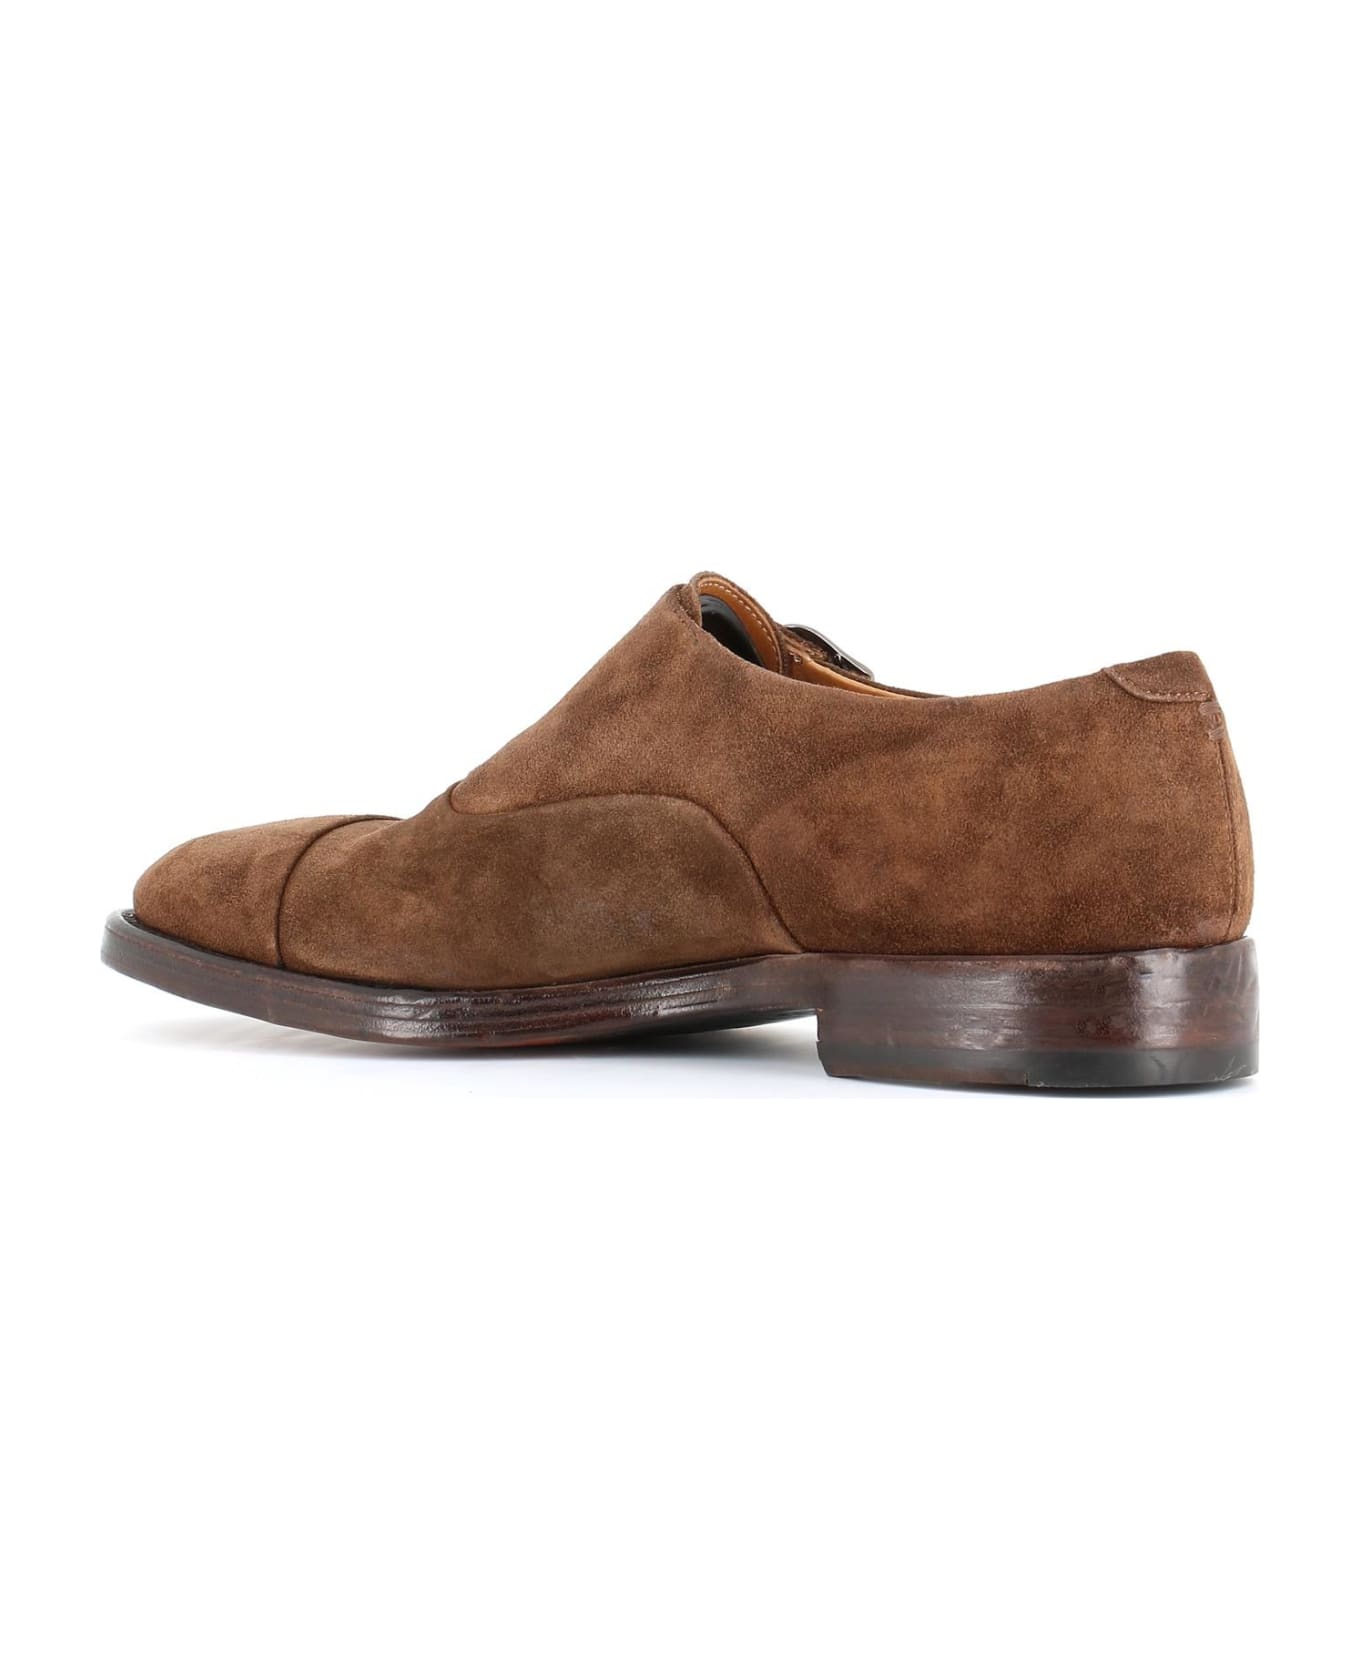 Alberto Fasciani Monk Shoes "xavier 55011" - Beige